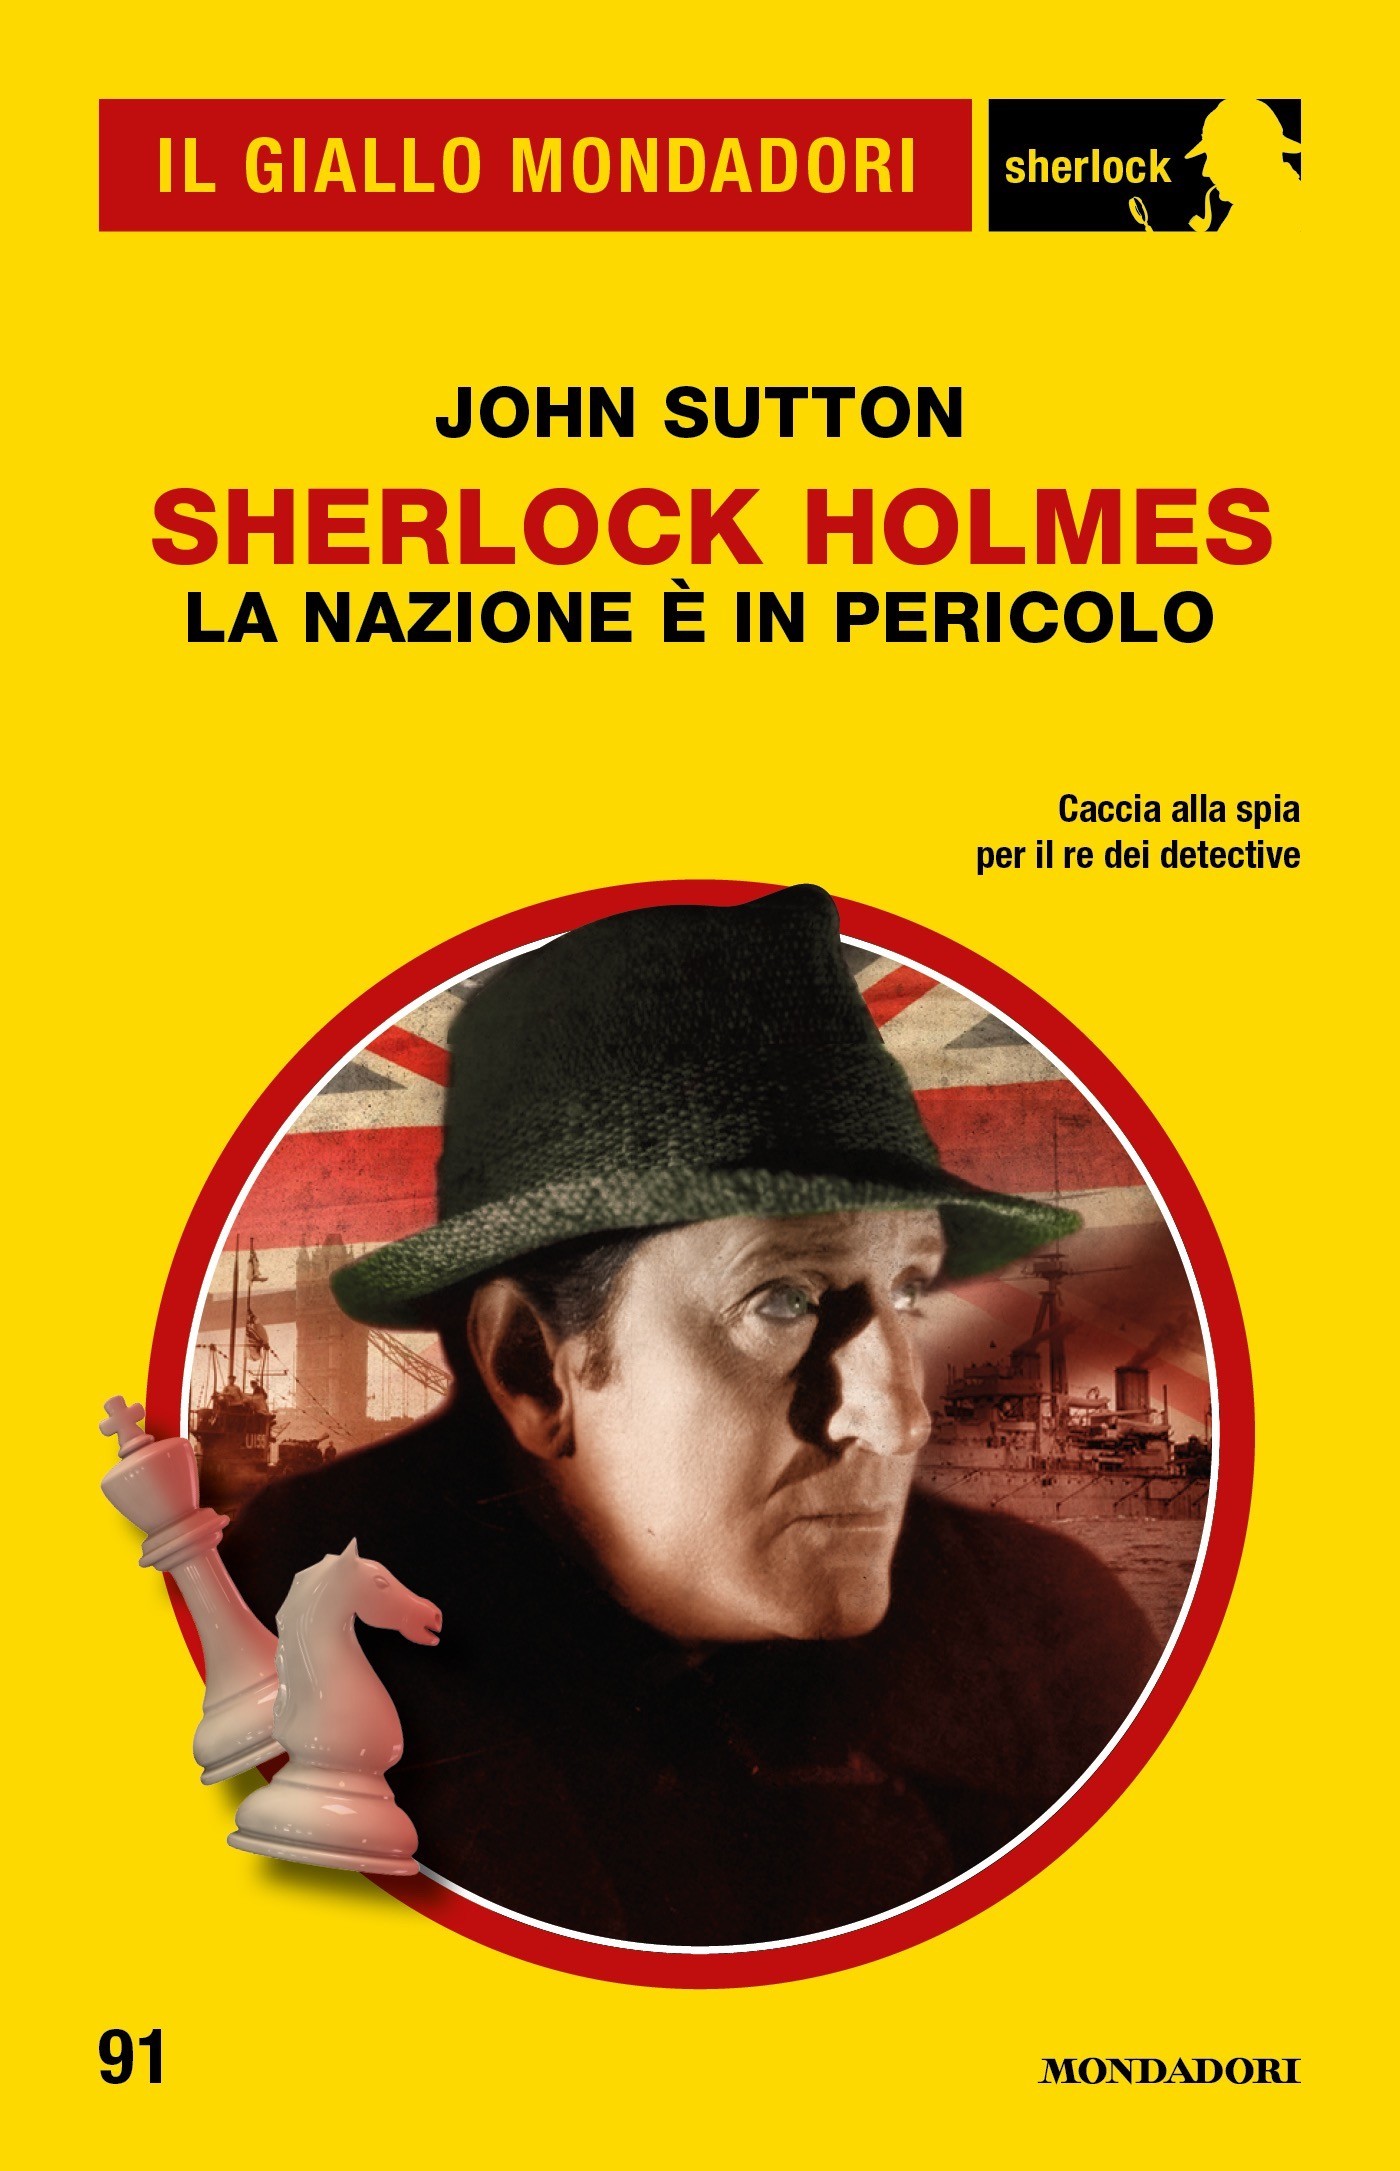 Sherlock Holmes. La nazione è in pericolo (Il Giallo Mondadori Sherlock) - Librerie.coop